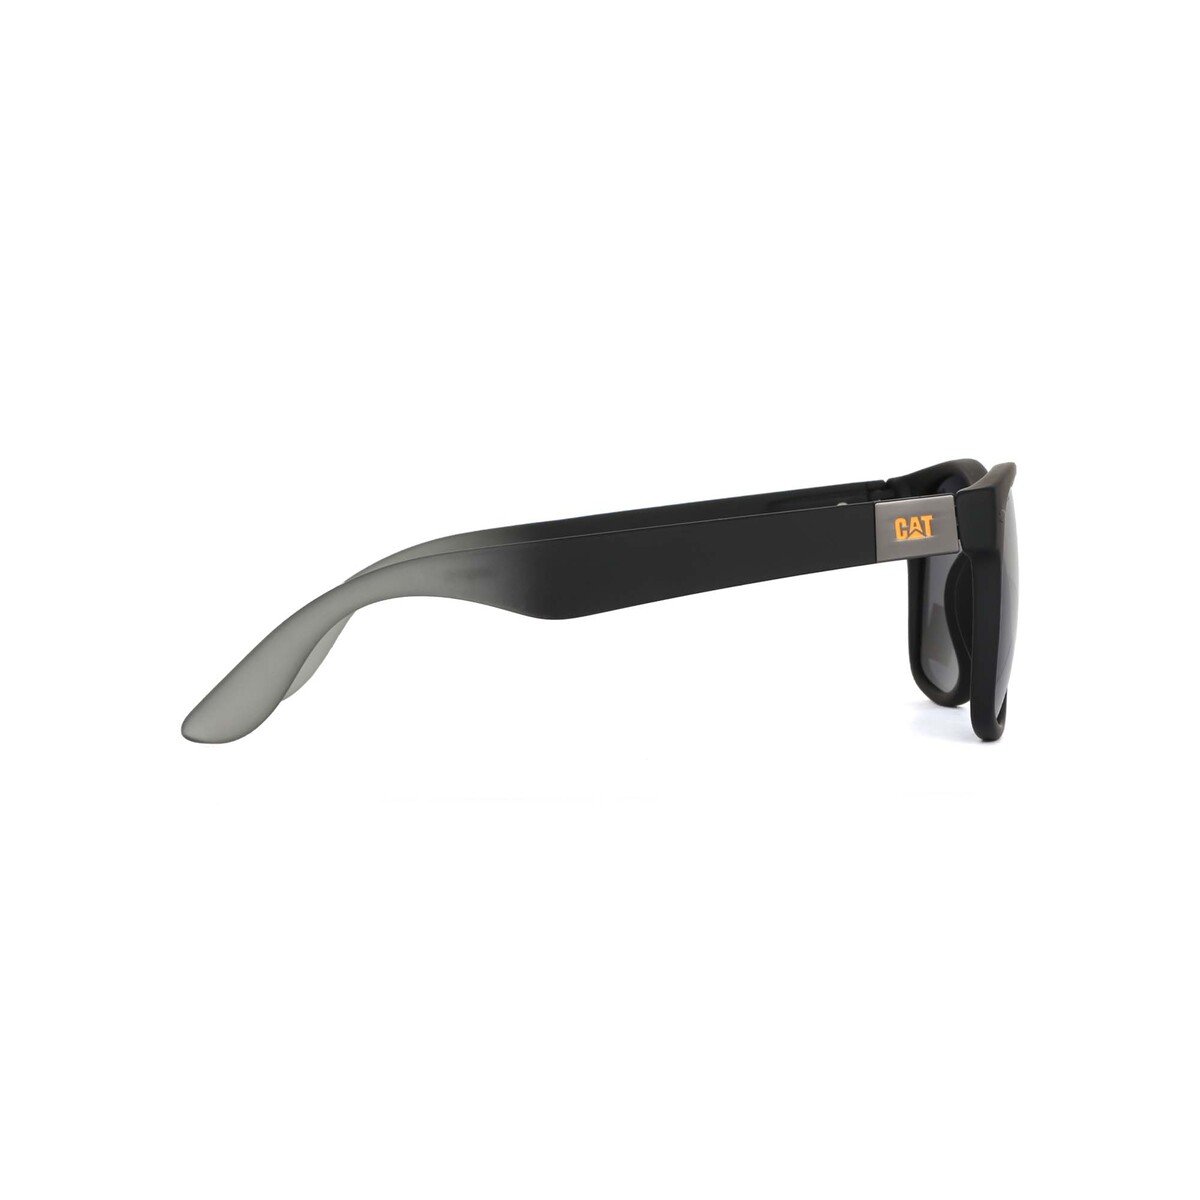 كاتربيلر نظارة شمسية رجالية Ctsblinding104P بتصميم مربع و لون أسود مطفي